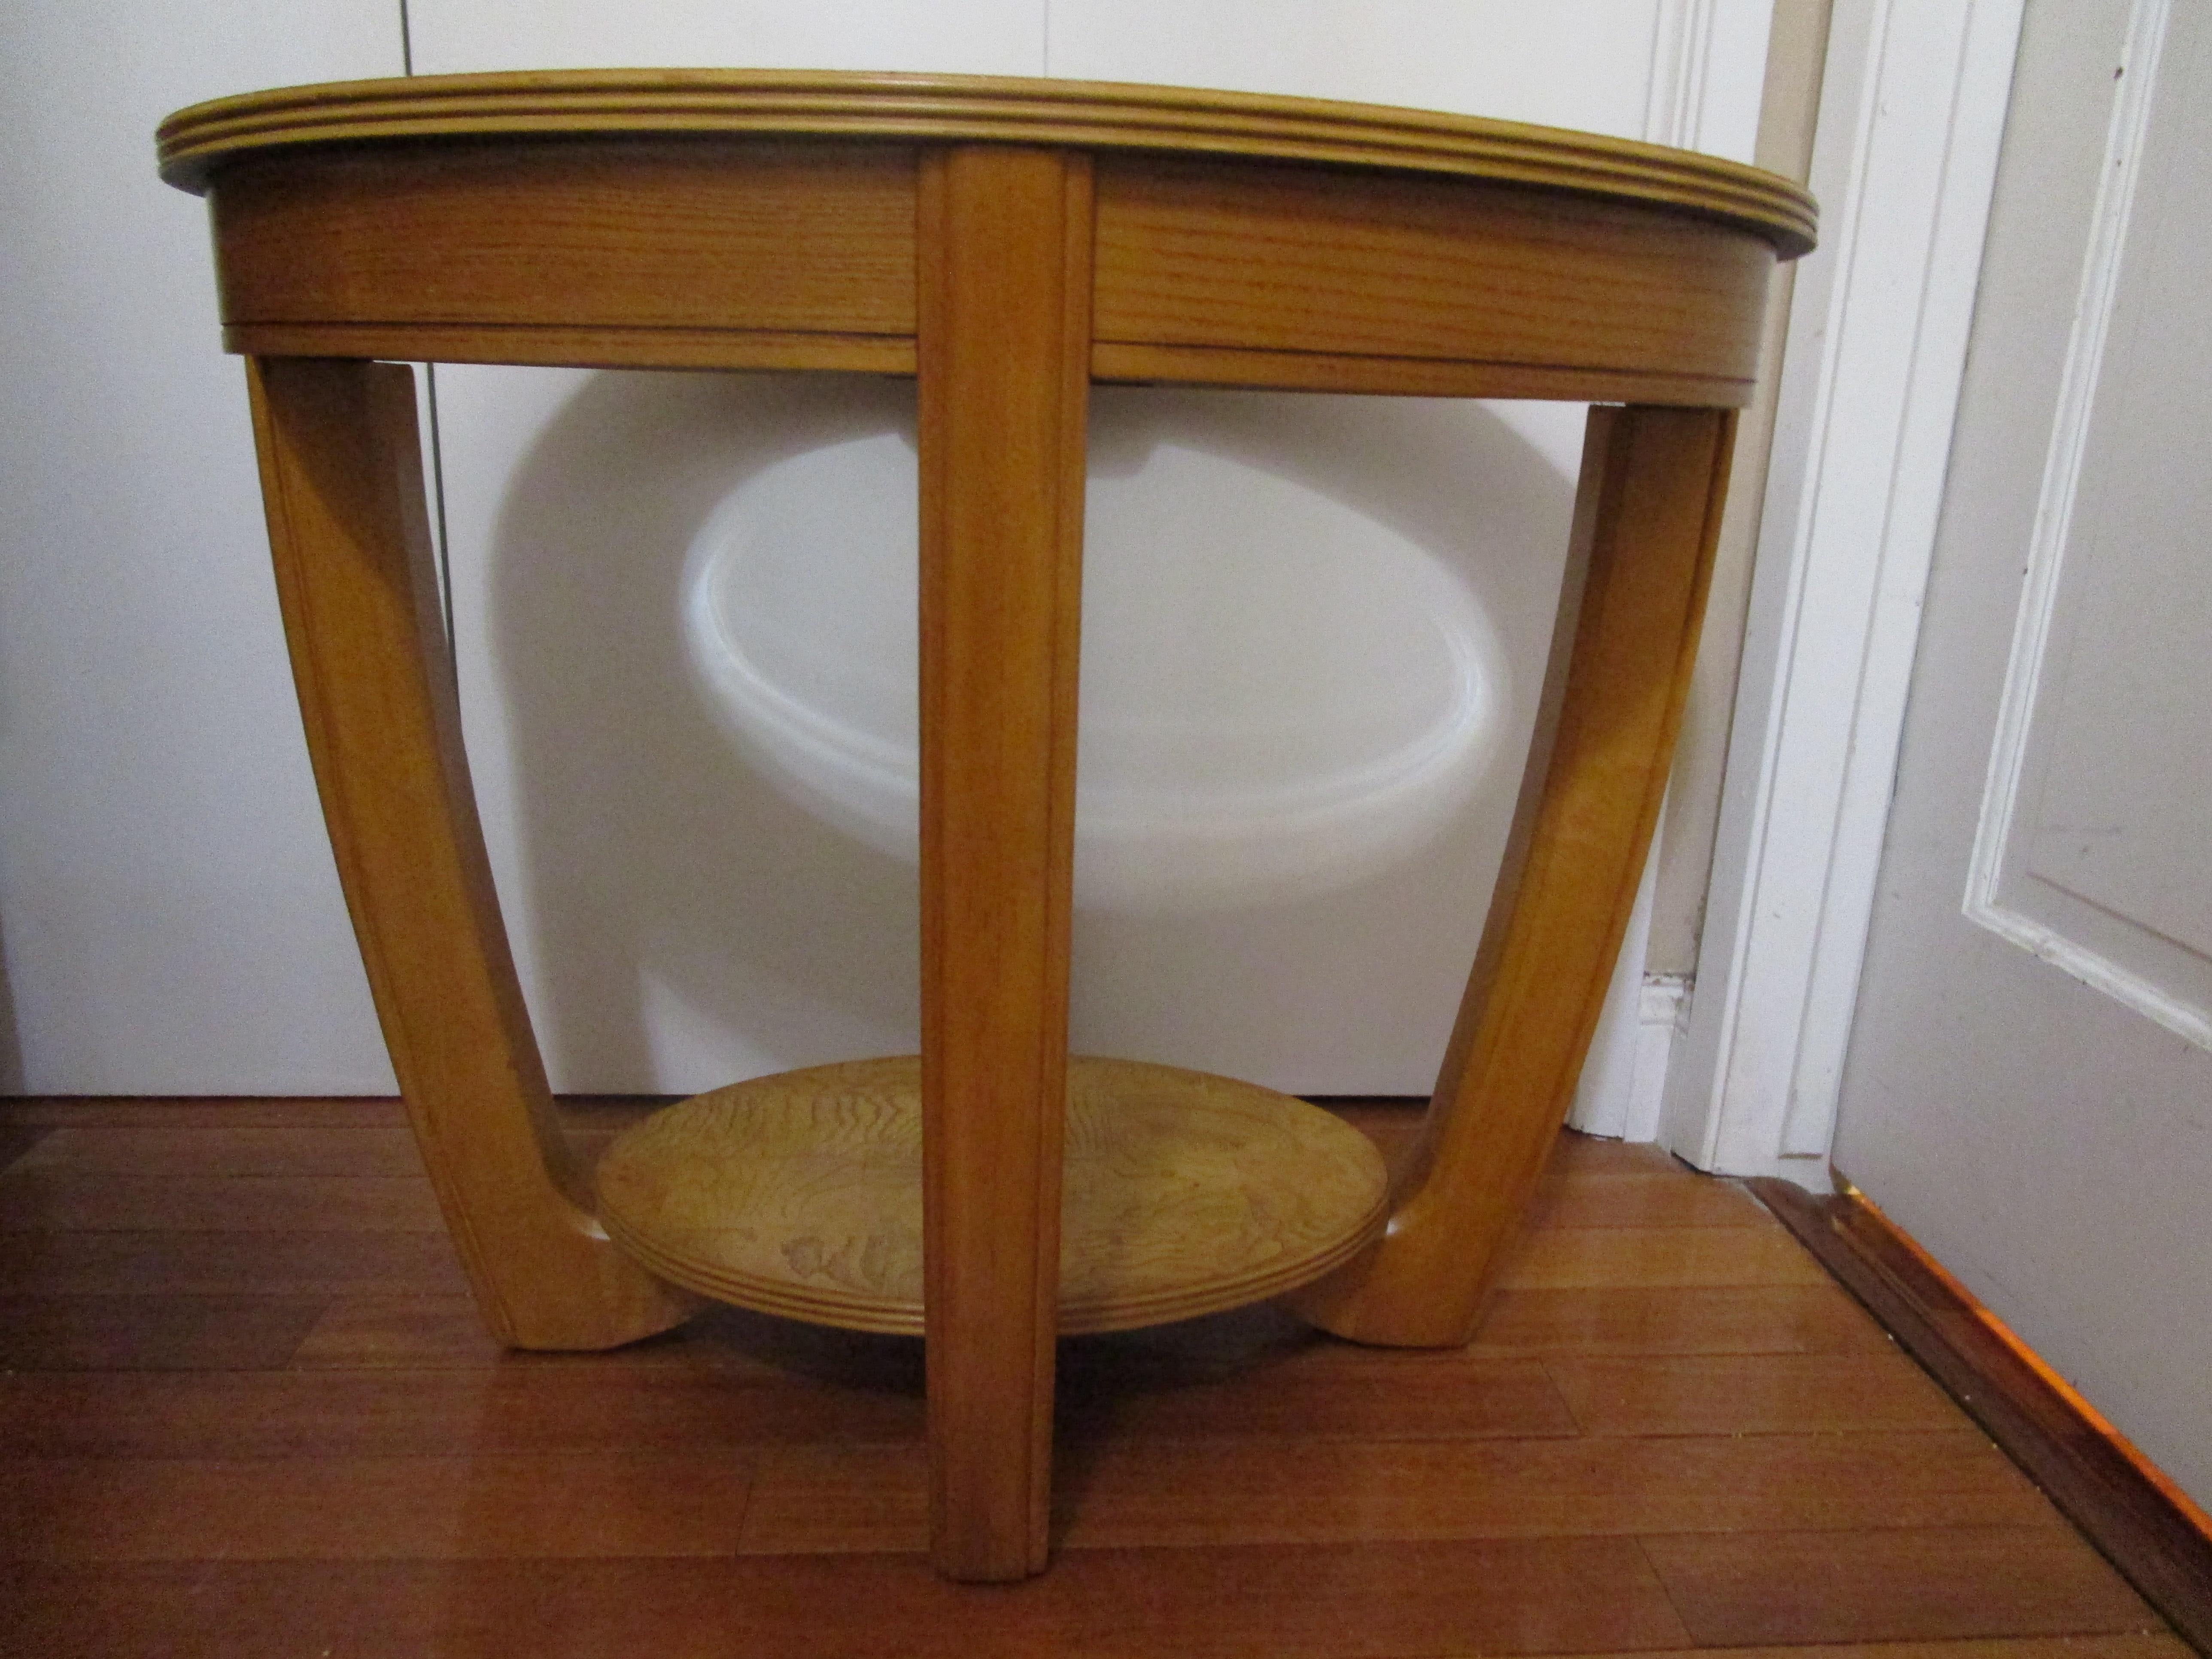 Die Kombination der ovalen Form und der Geometrie des Art-Deco-Stils für diesen Ulmenholztisch schafft eine schöne Silhouette. Die Form des Tisches und die luxuriöse Textur des Holzes spiegeln den Art-Déco-Stil wider. Dieser ovale Beistelltisch aus